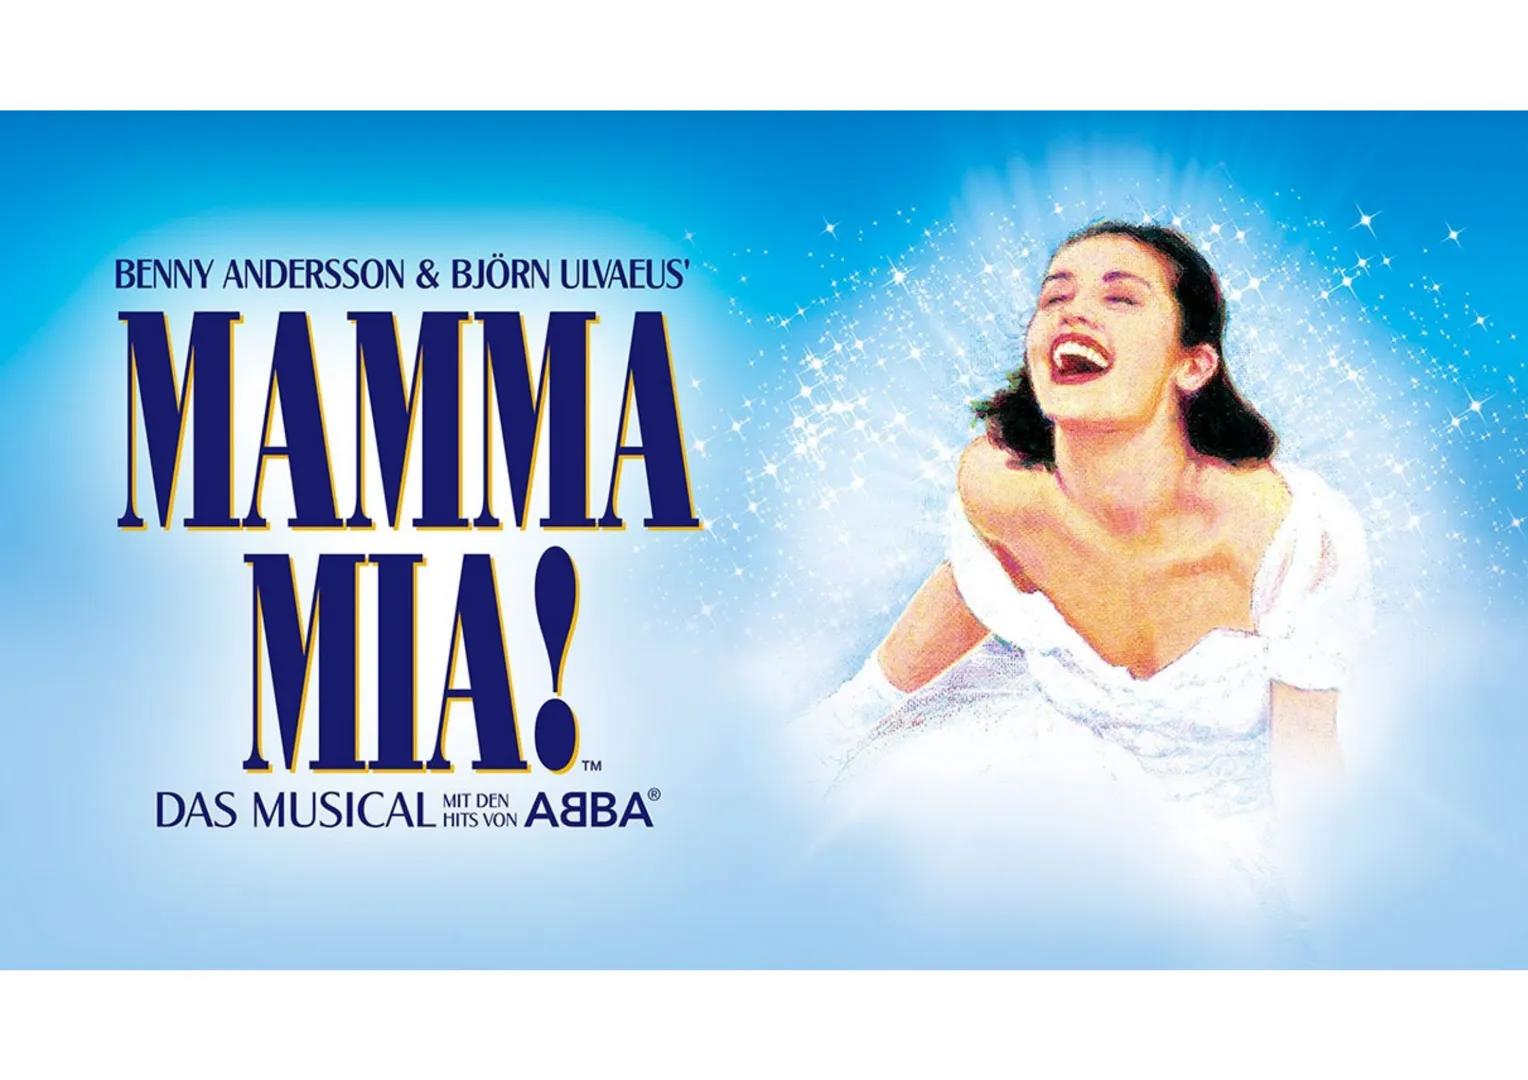 
<h2 id="allgemeines">Allgemeines</h2>
<p>Das Genre des Musicals "Mamma Mia!" ist eine Pop-Komödie. Nach dem großen Erfolg des Musicals "Che